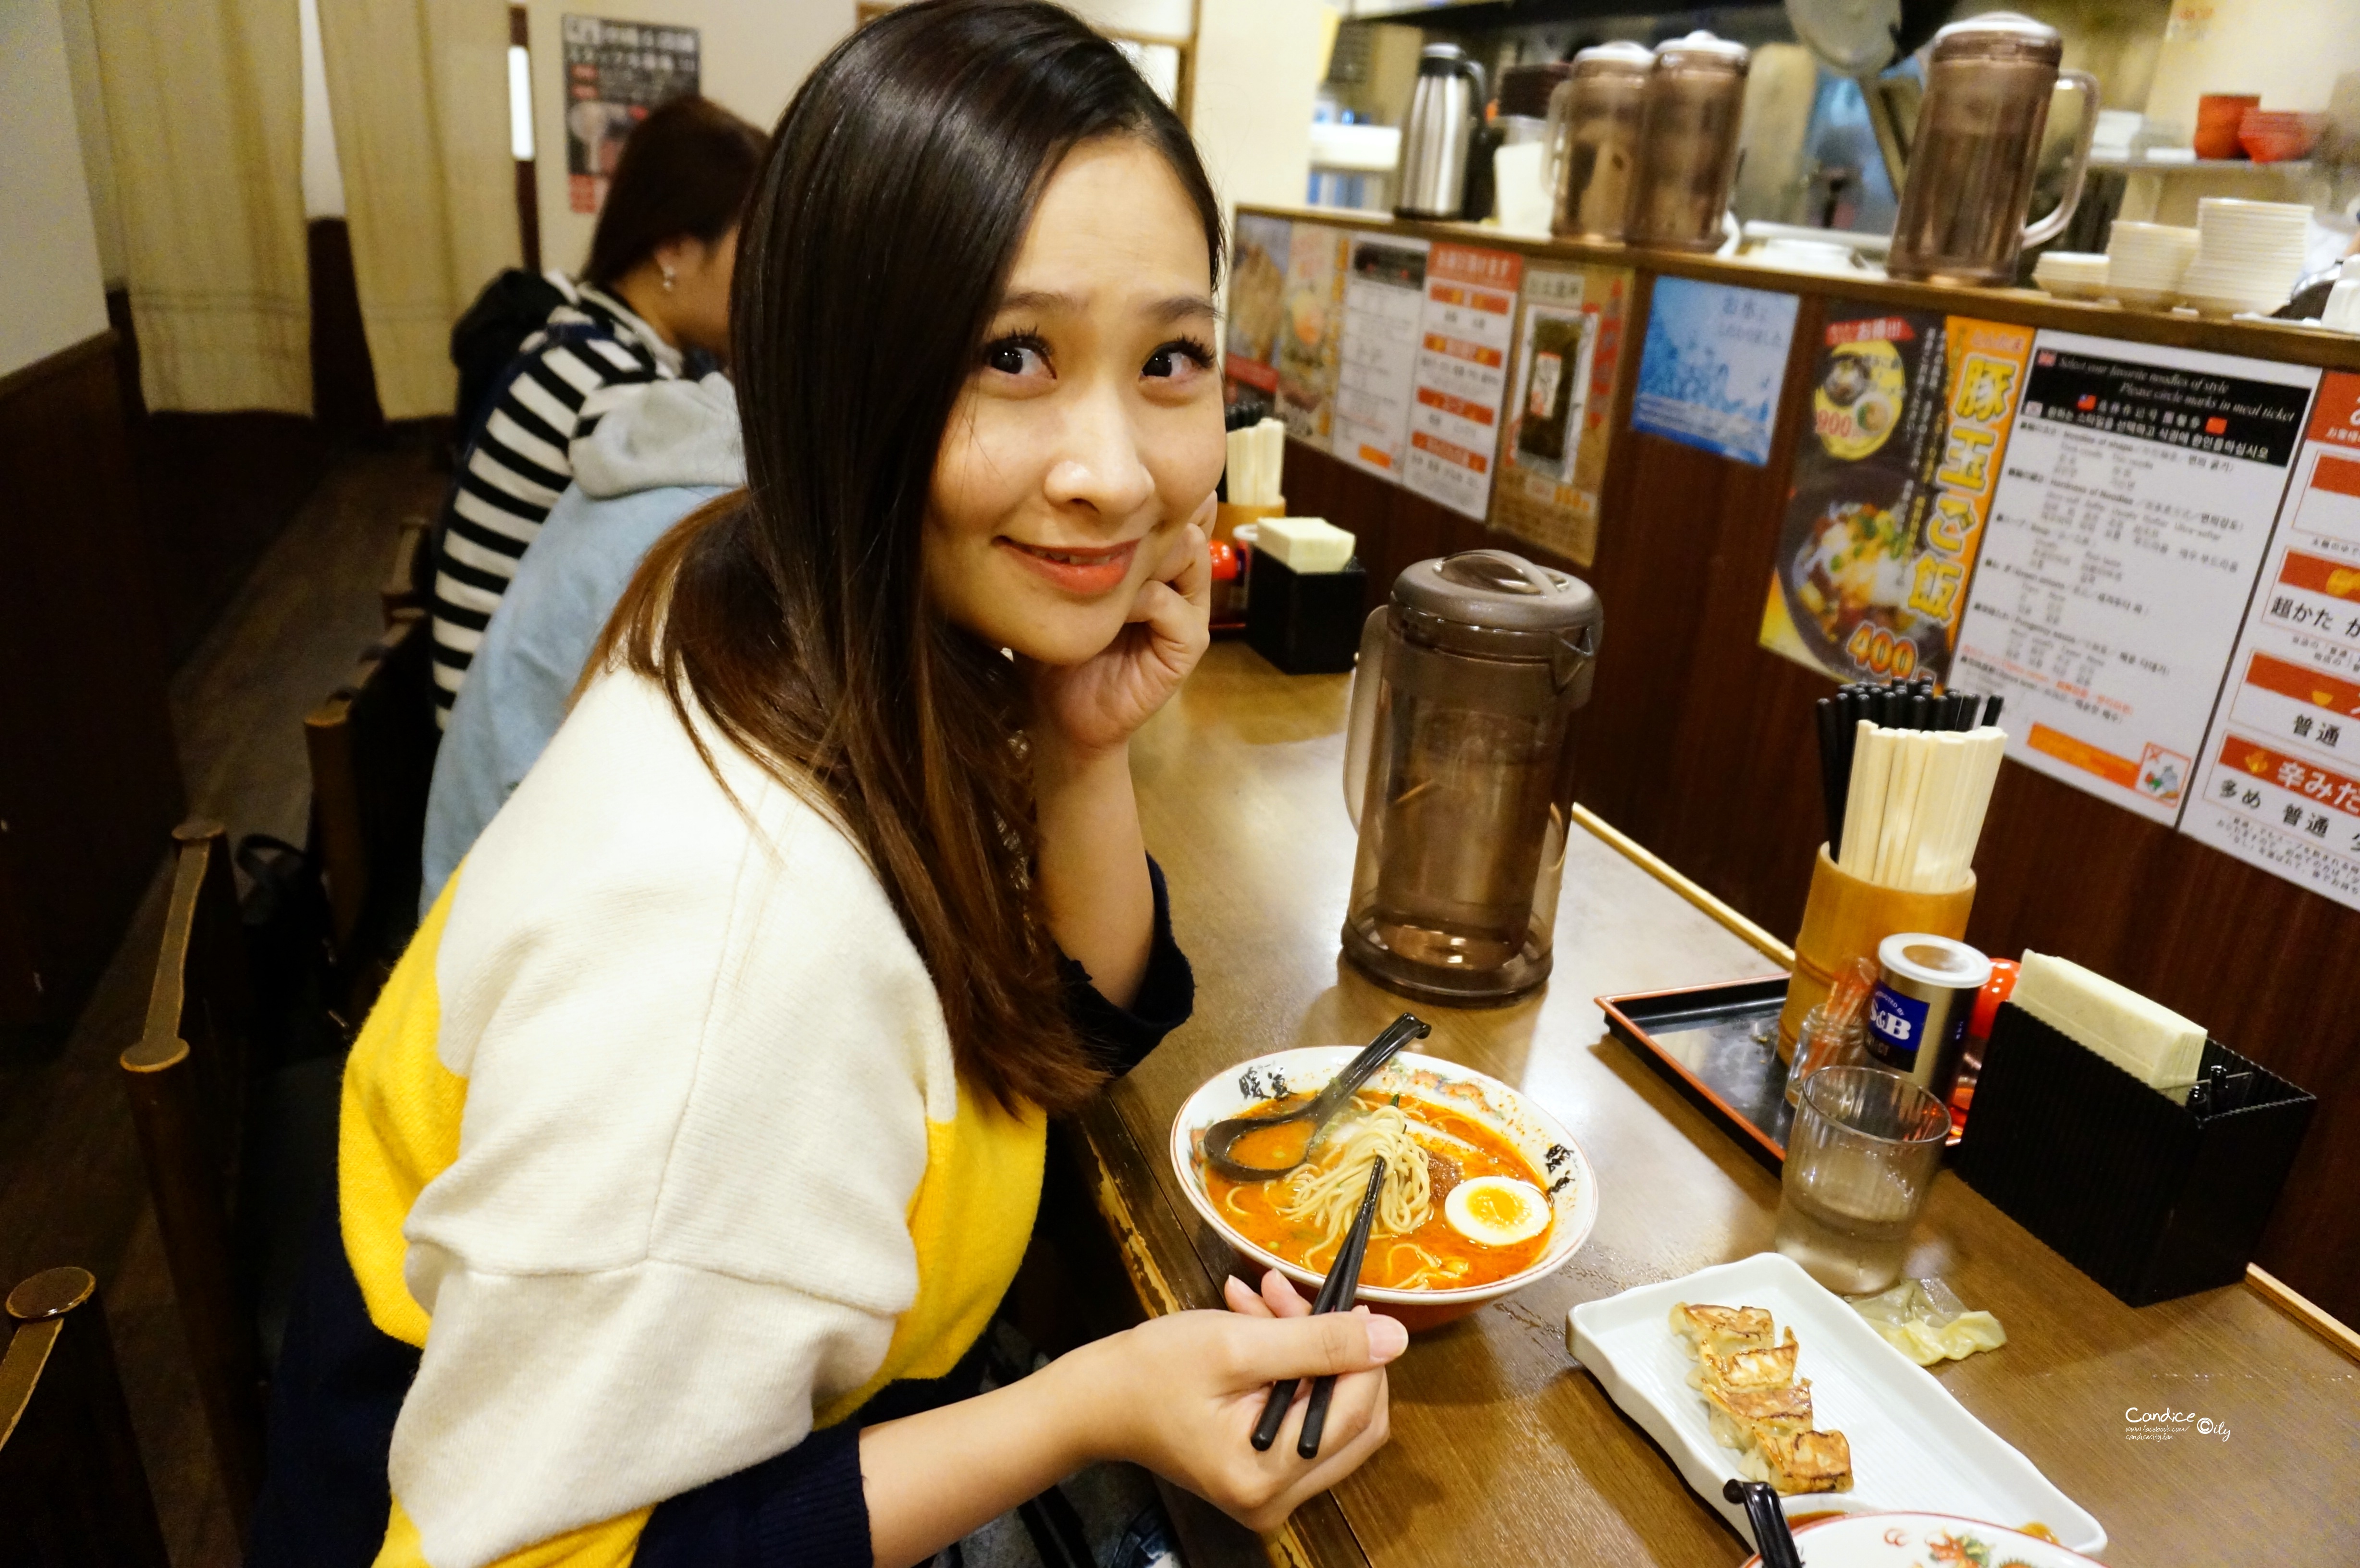 沖繩美食■暖暮拉麵 九州第一名拉麵 必吃濃郁辣拉麵! @陳小沁の吃喝玩樂